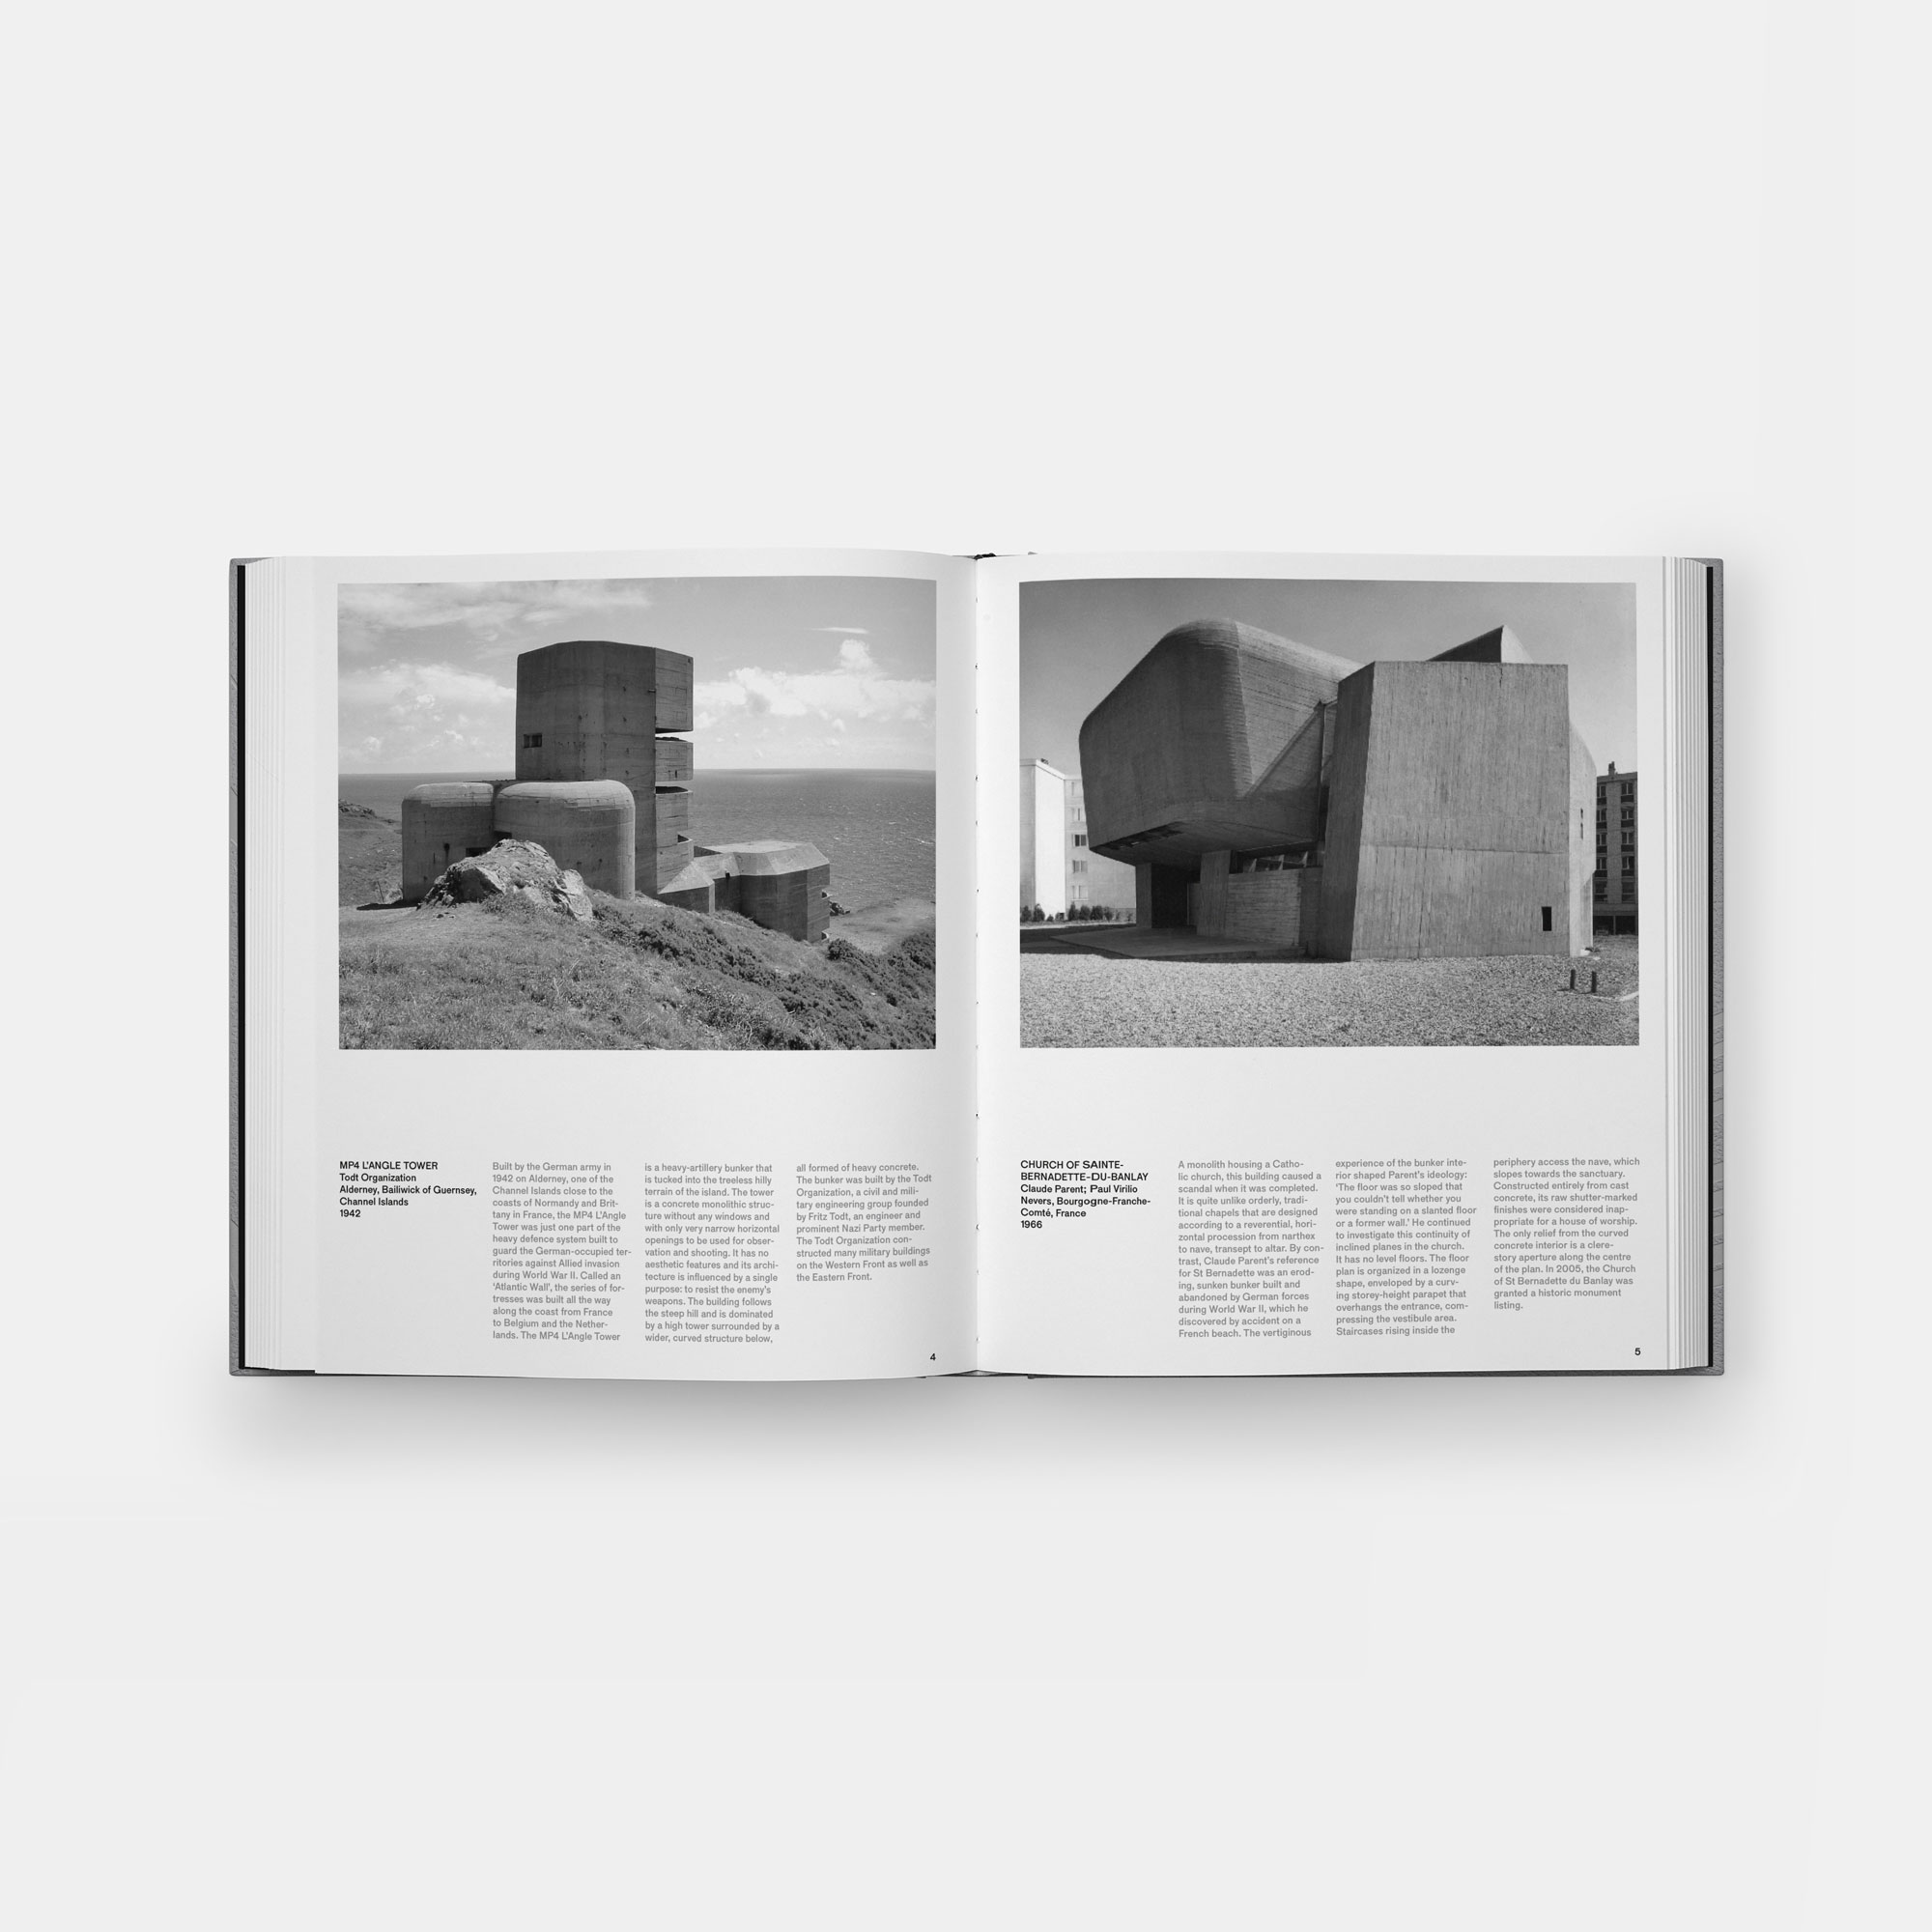 Concrete Architecture: The Ultimate Collection - Gessato